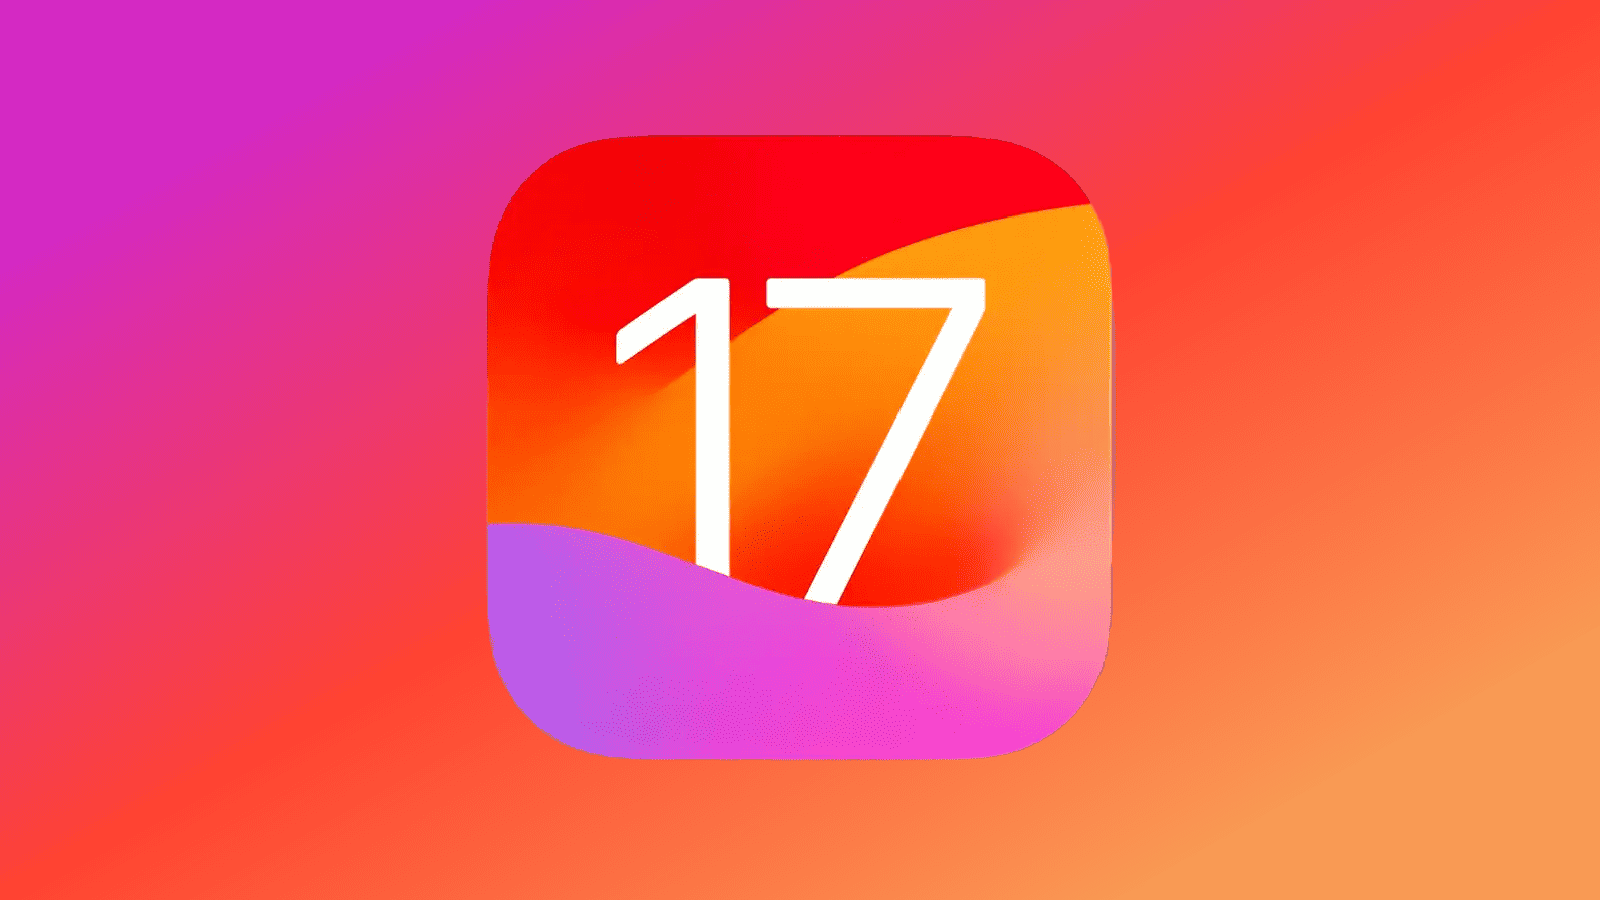 Descubra todo lo que necesita saber sobre iOS 17